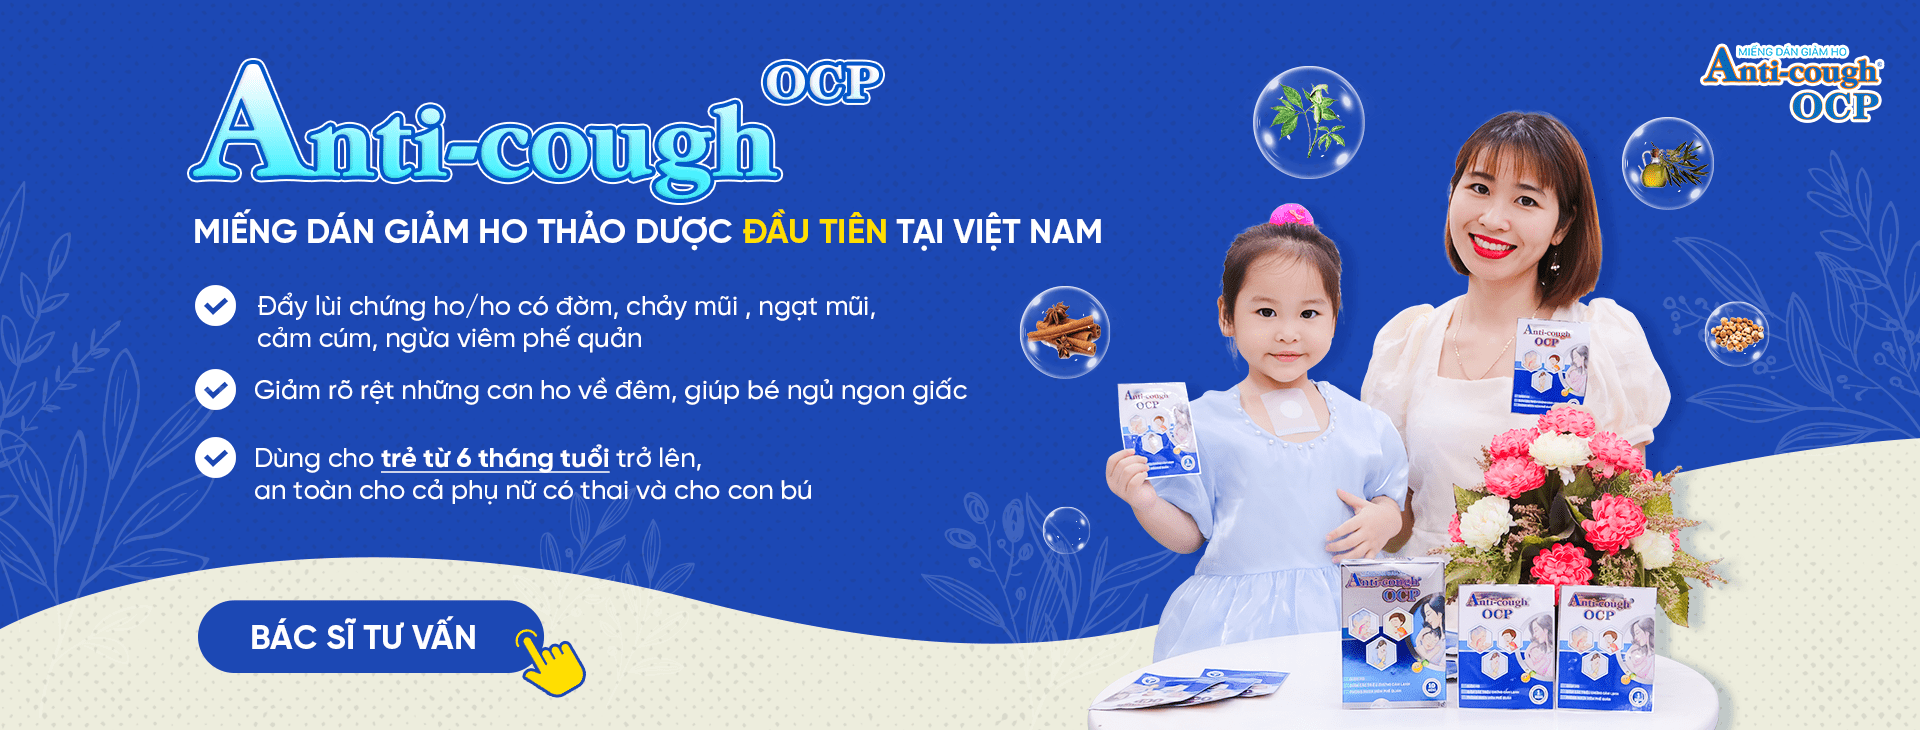 Dược sĩ Thanh Phương tại xóm 7, Cảnh Thụy, Yên Dũng, Bắc Giang